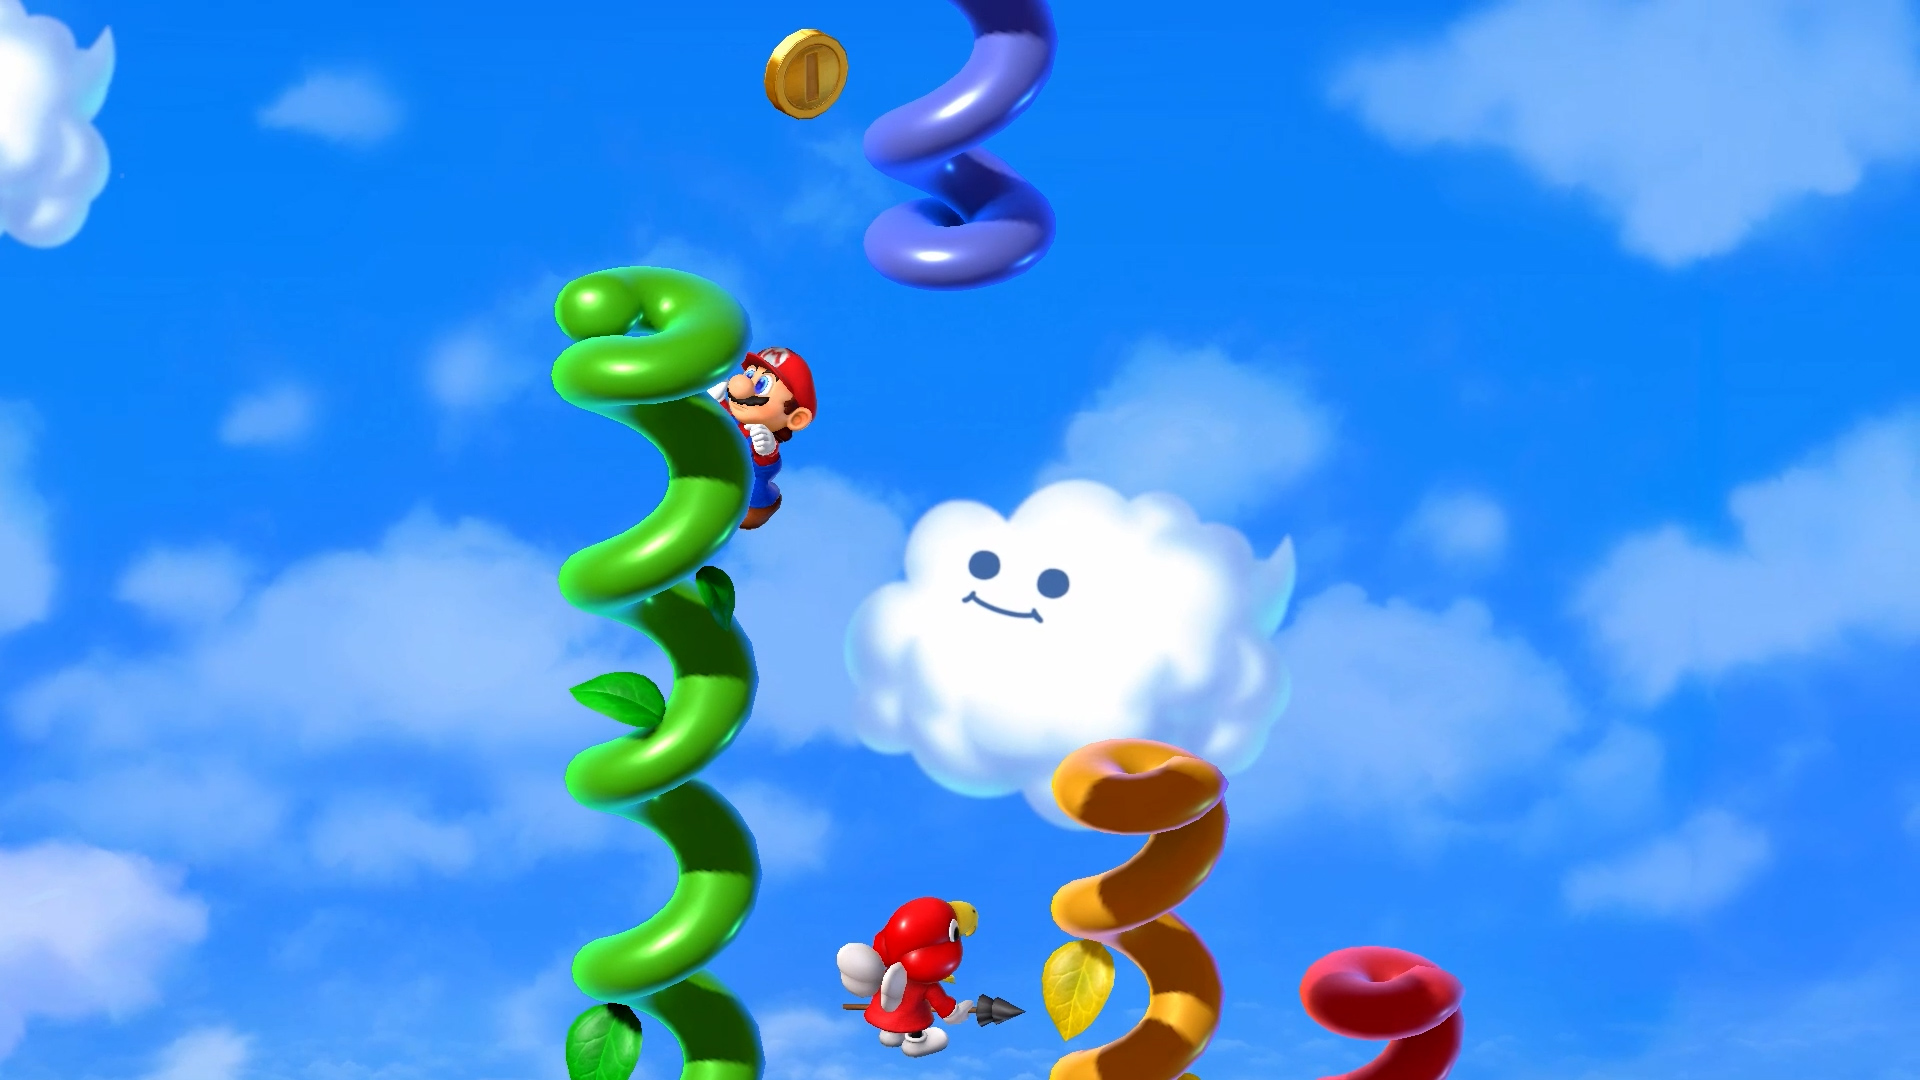 Mario climbs colorful beanstalks in Super Mario RPG.